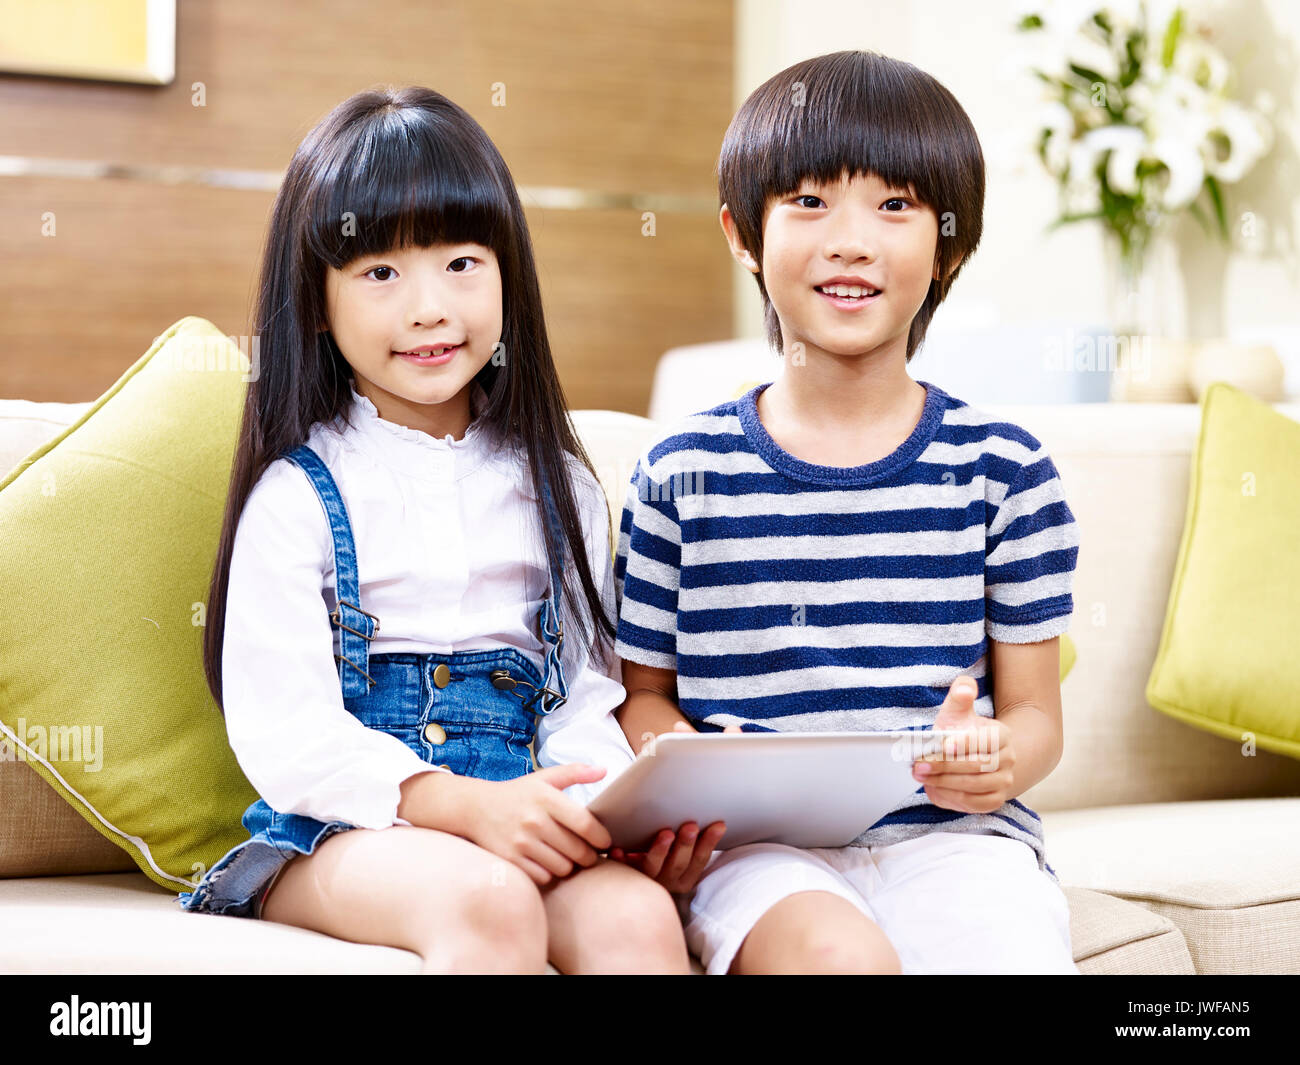 Portrait de deux enfants asiatiques sitting on couch holding digital tablet. Banque D'Images